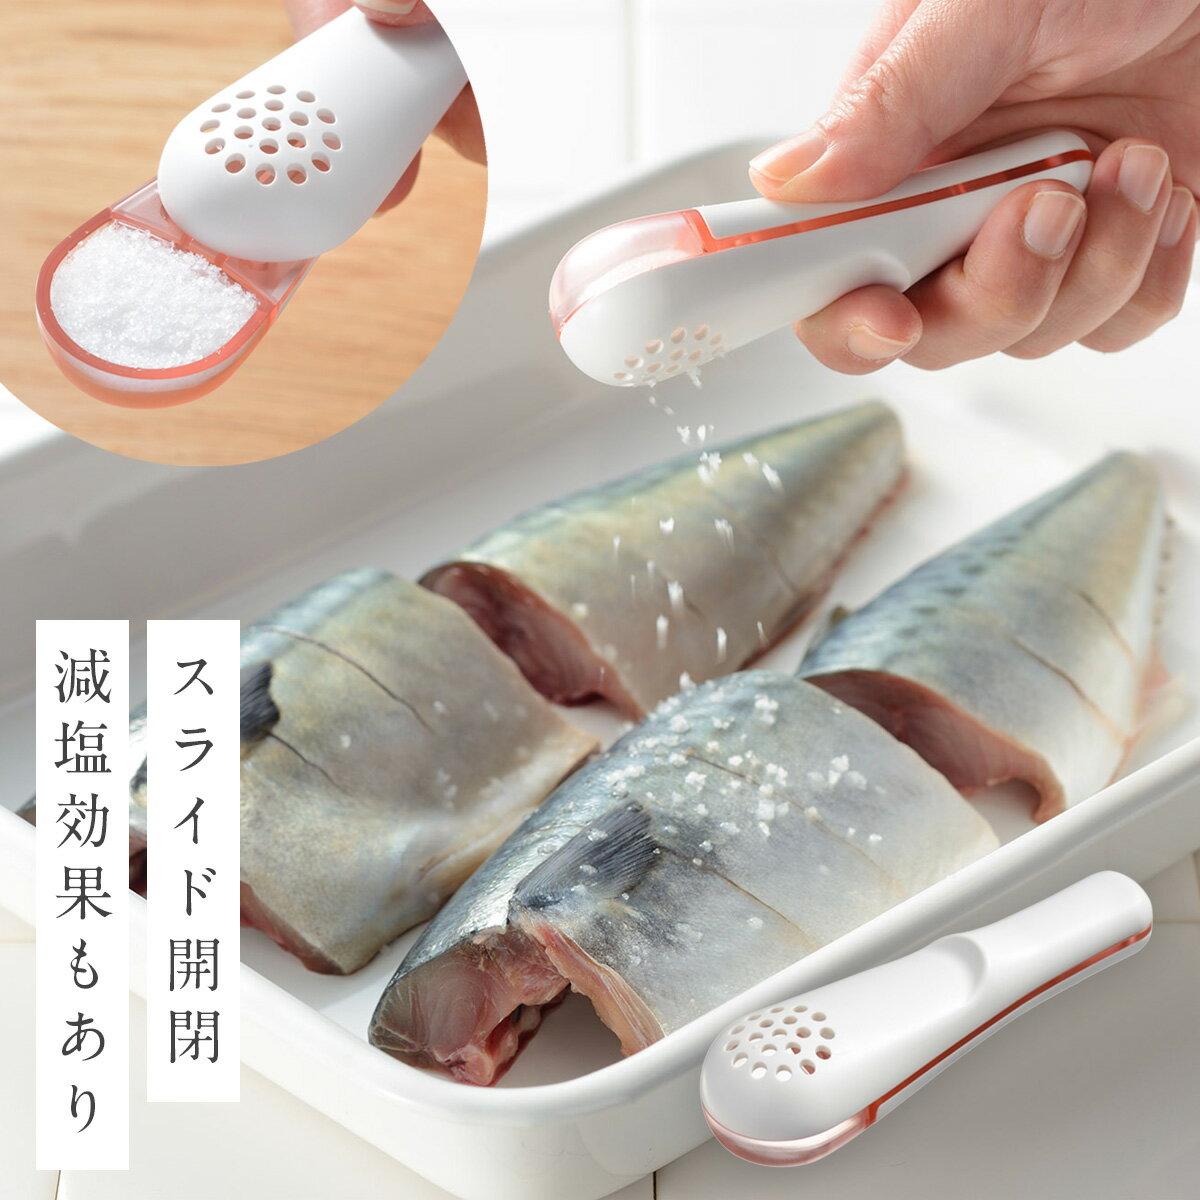 塩ふるい スプーン 粗塩 塩 肉 魚 下ごしらえ 減塩 計量 すり切り 片手 スライド 調理器具 パラパラ塩ふるい